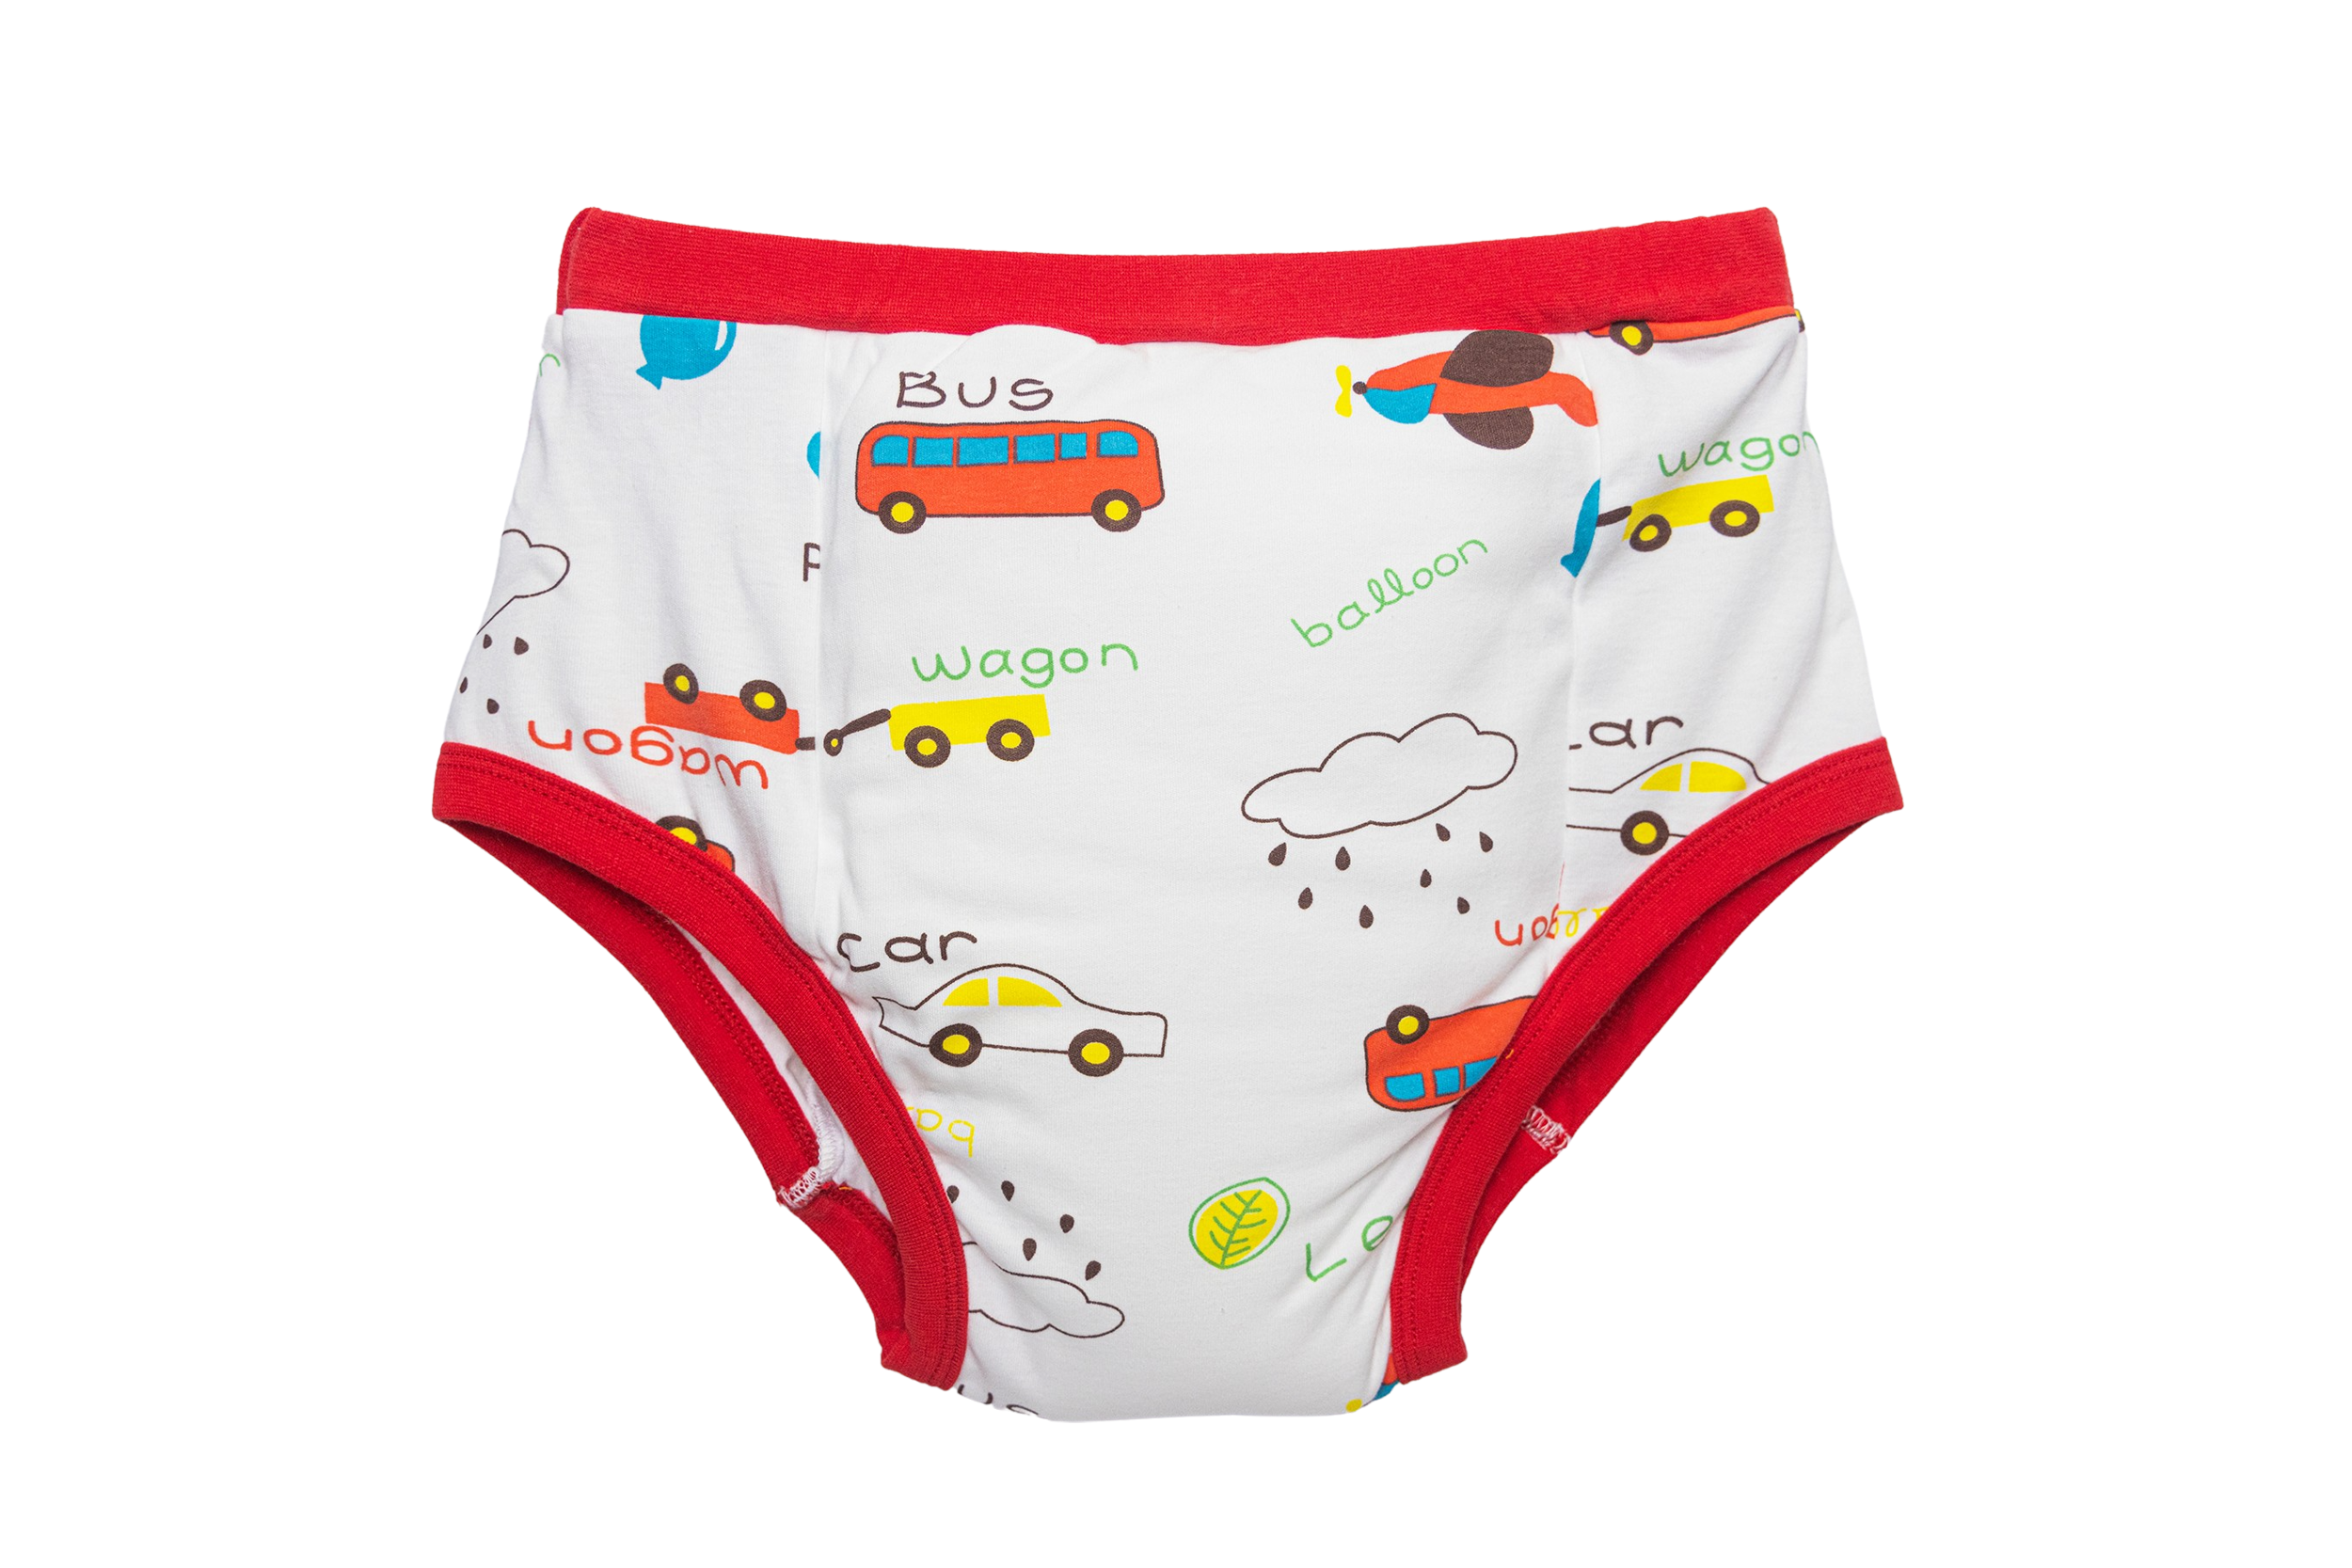 DiaperU underwear : r/ABDL